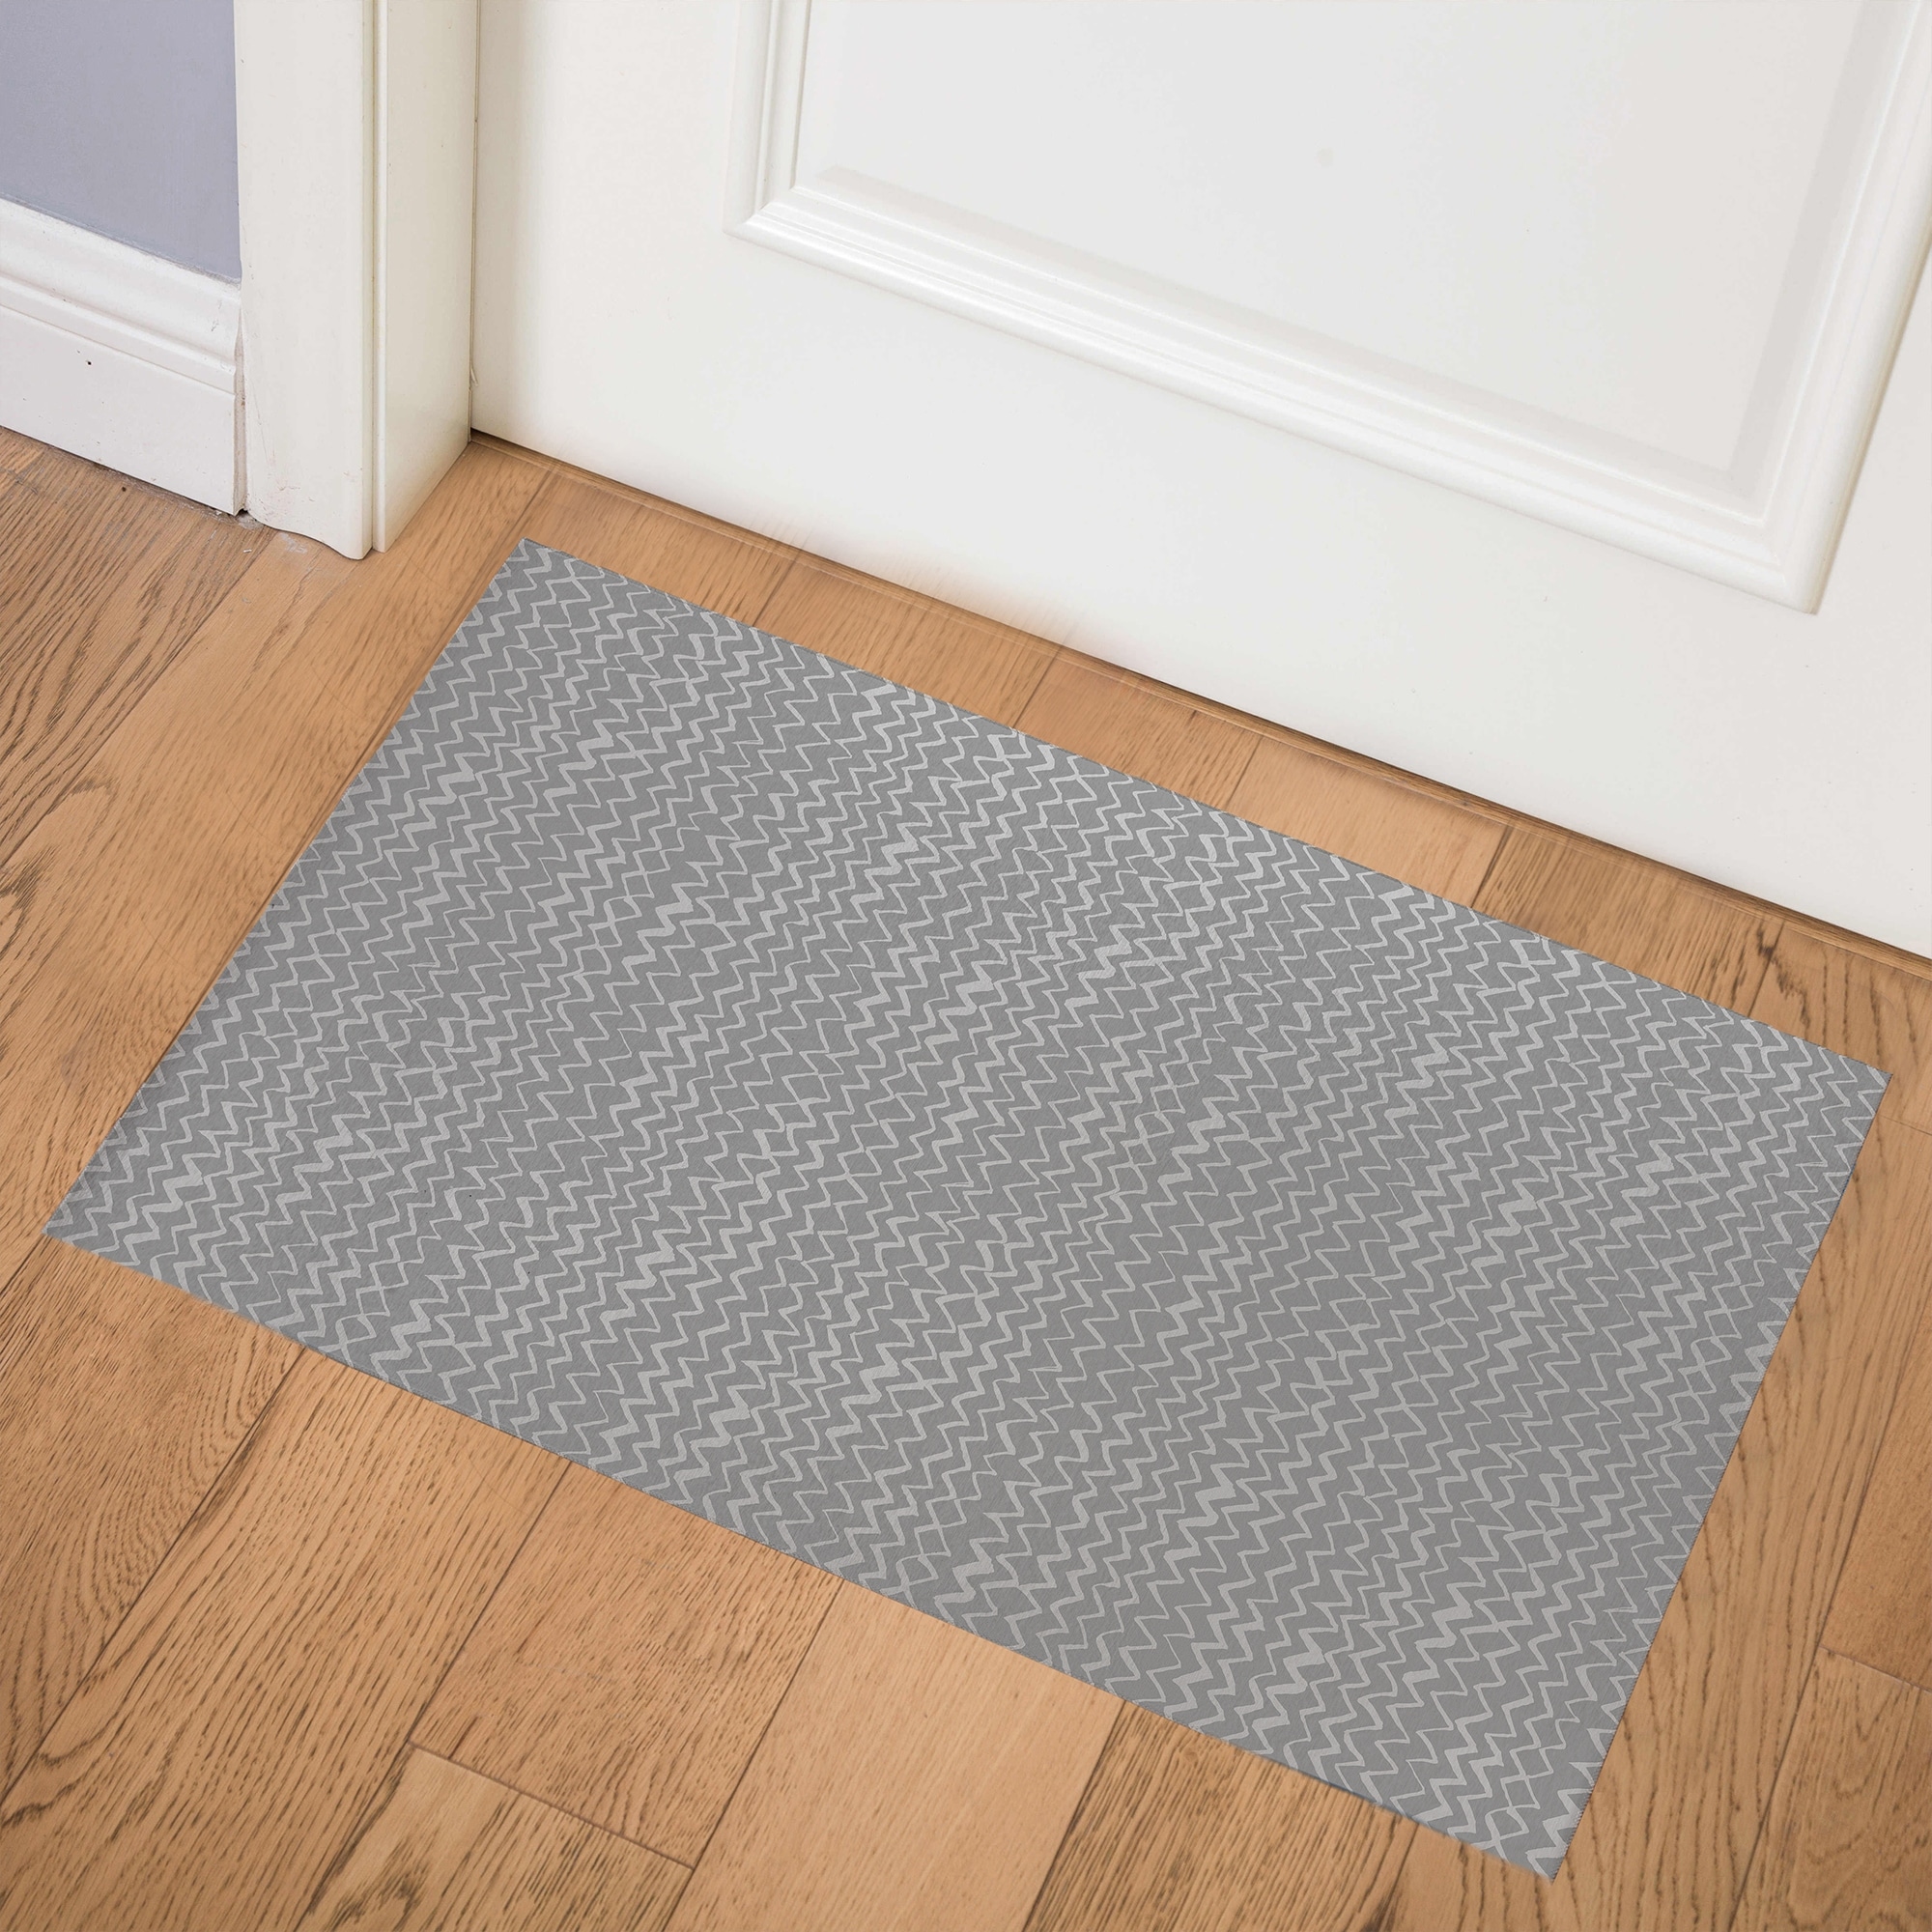 Envelor Indoor Outdoor Doormat Grey 24 in. x 36 in. Chevron Floor